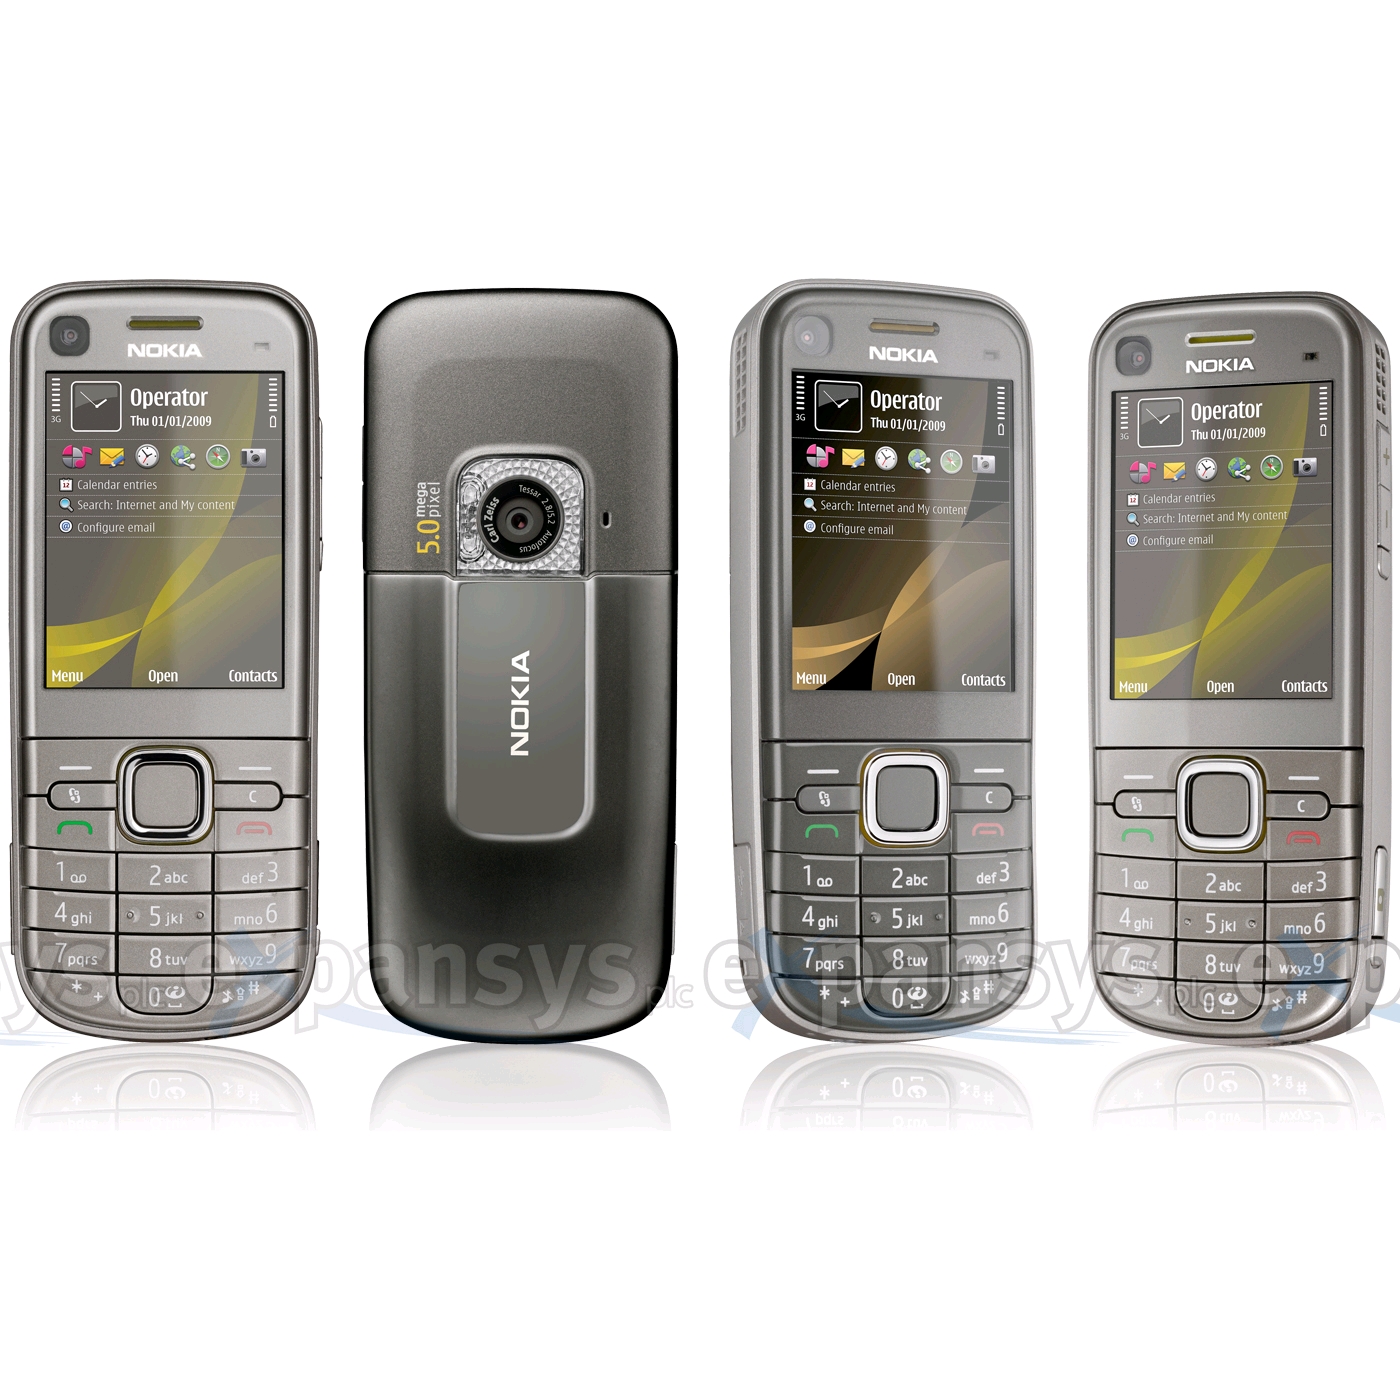 Nokia 6720 Classic, ya a la venta en la tienda on line de Nokia